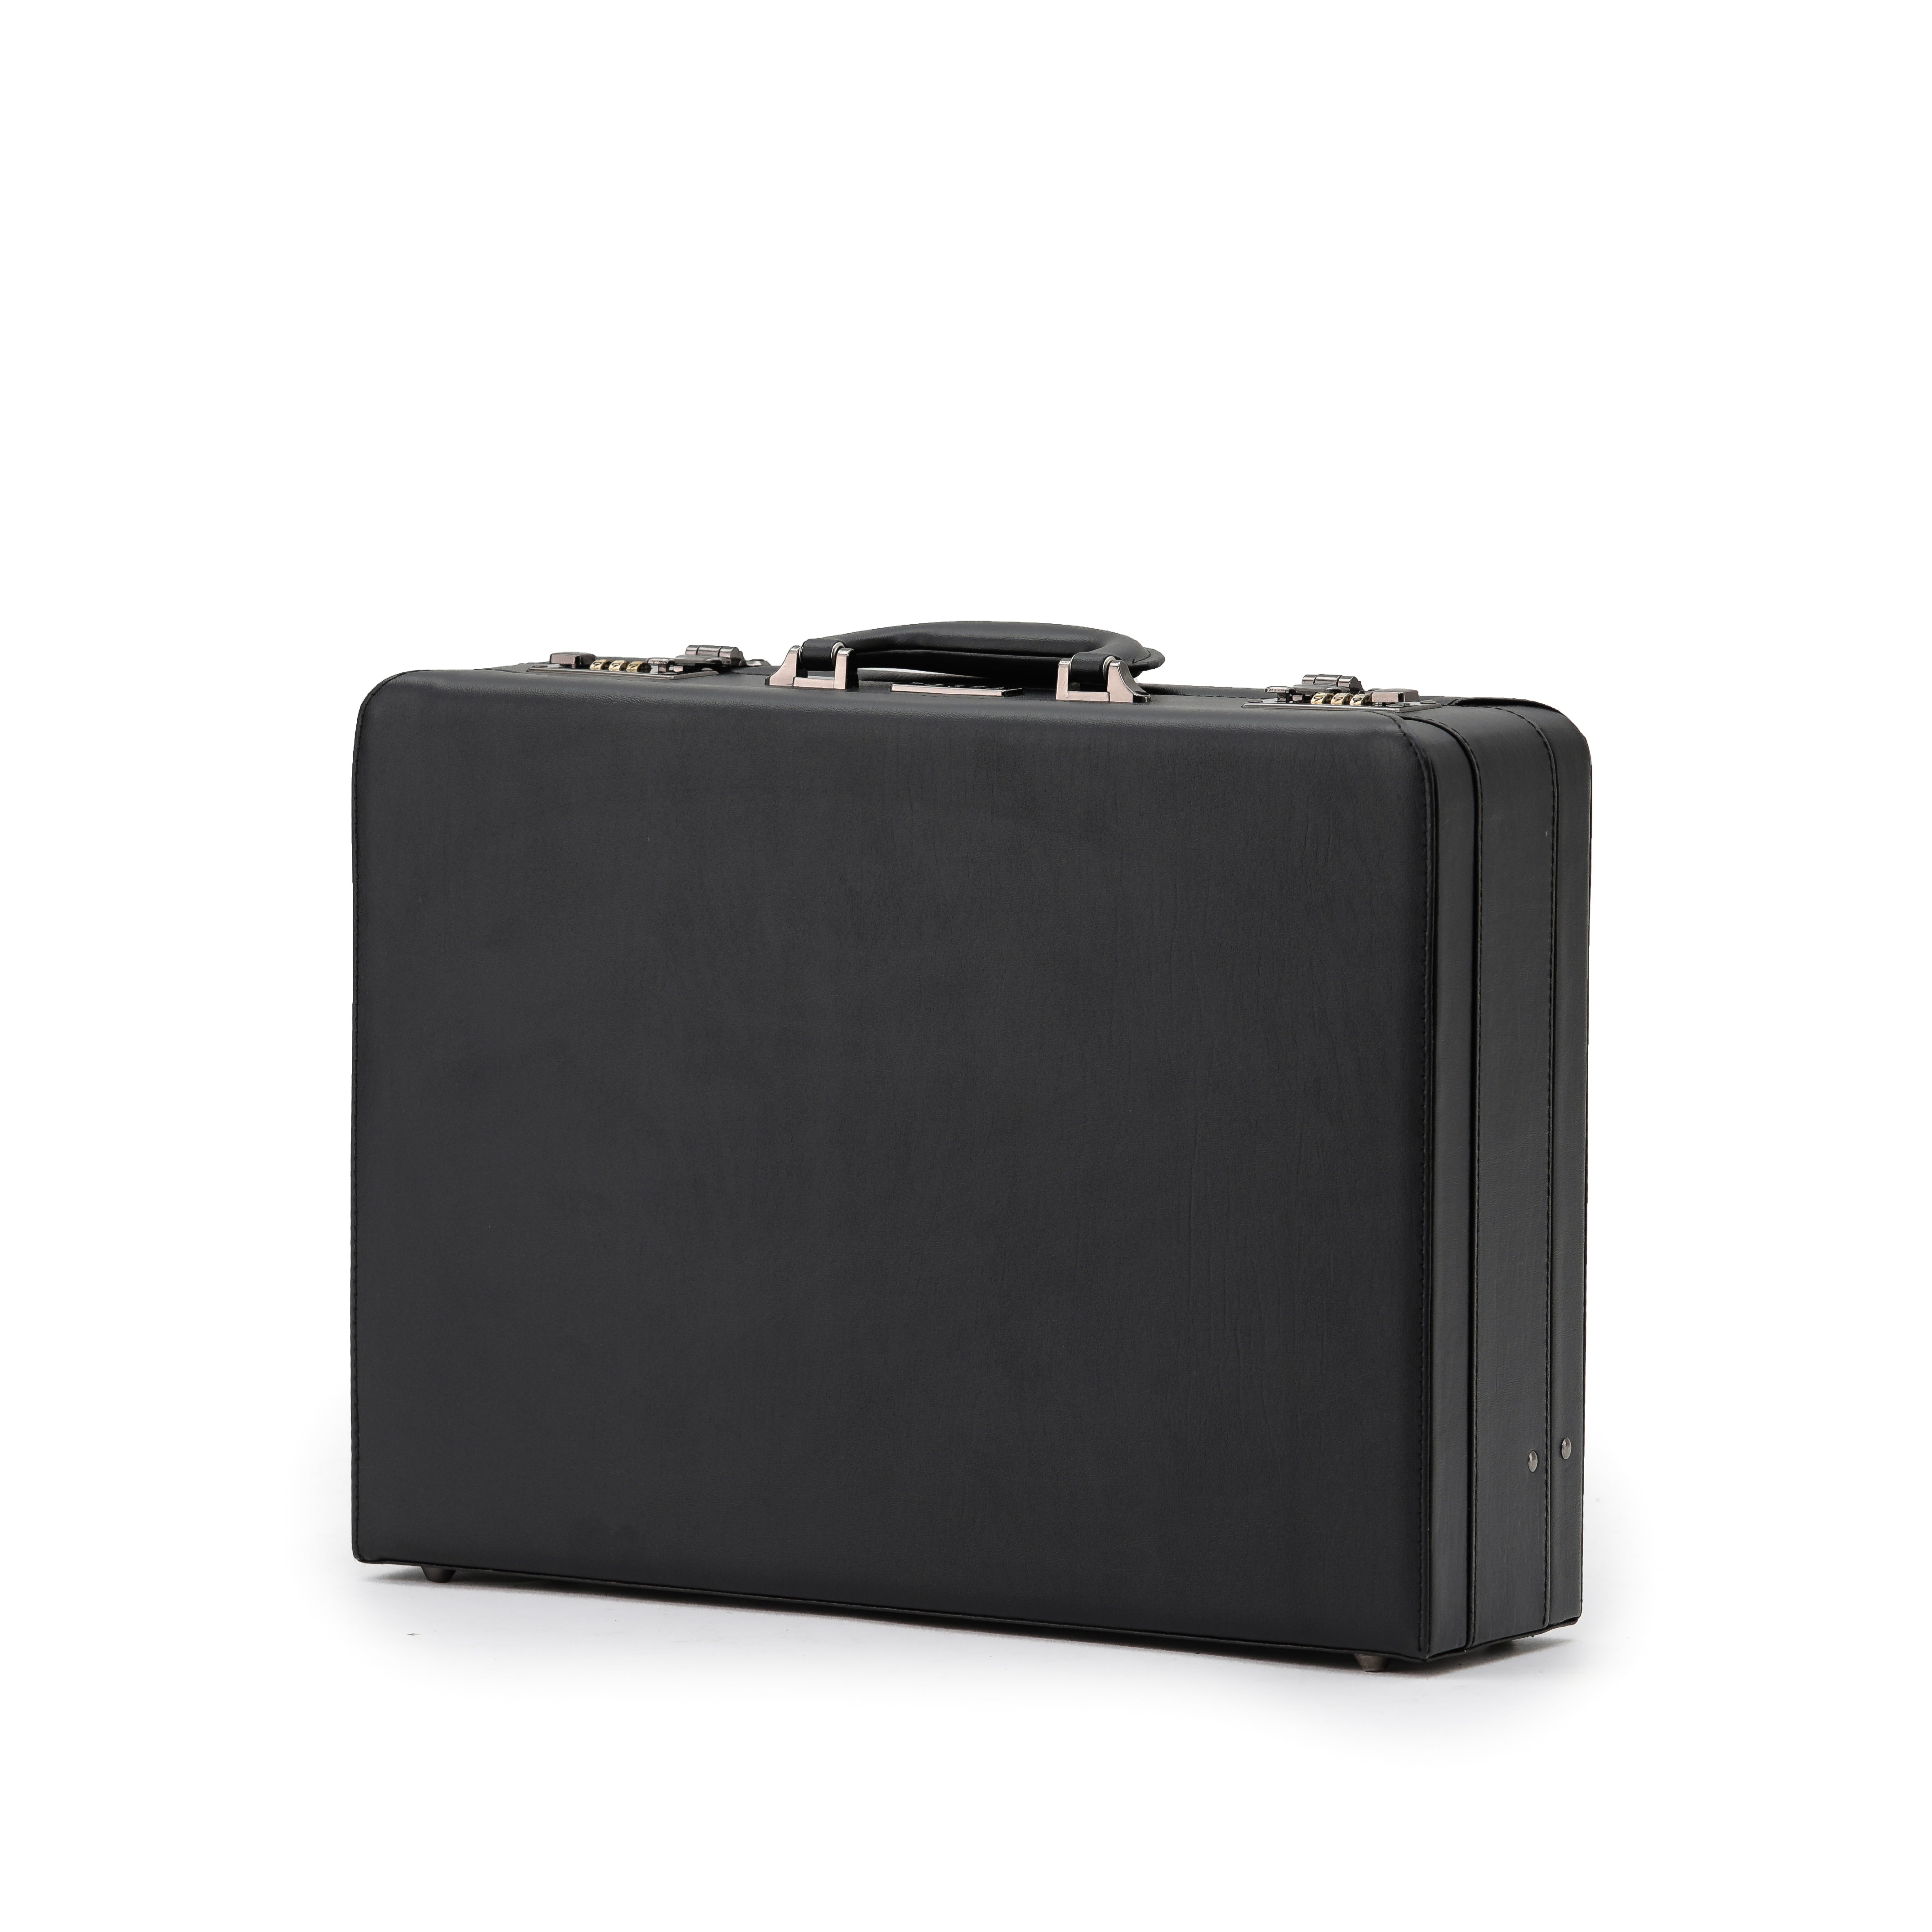 Tosca - TCA2605 attache briefcase - Black - 0